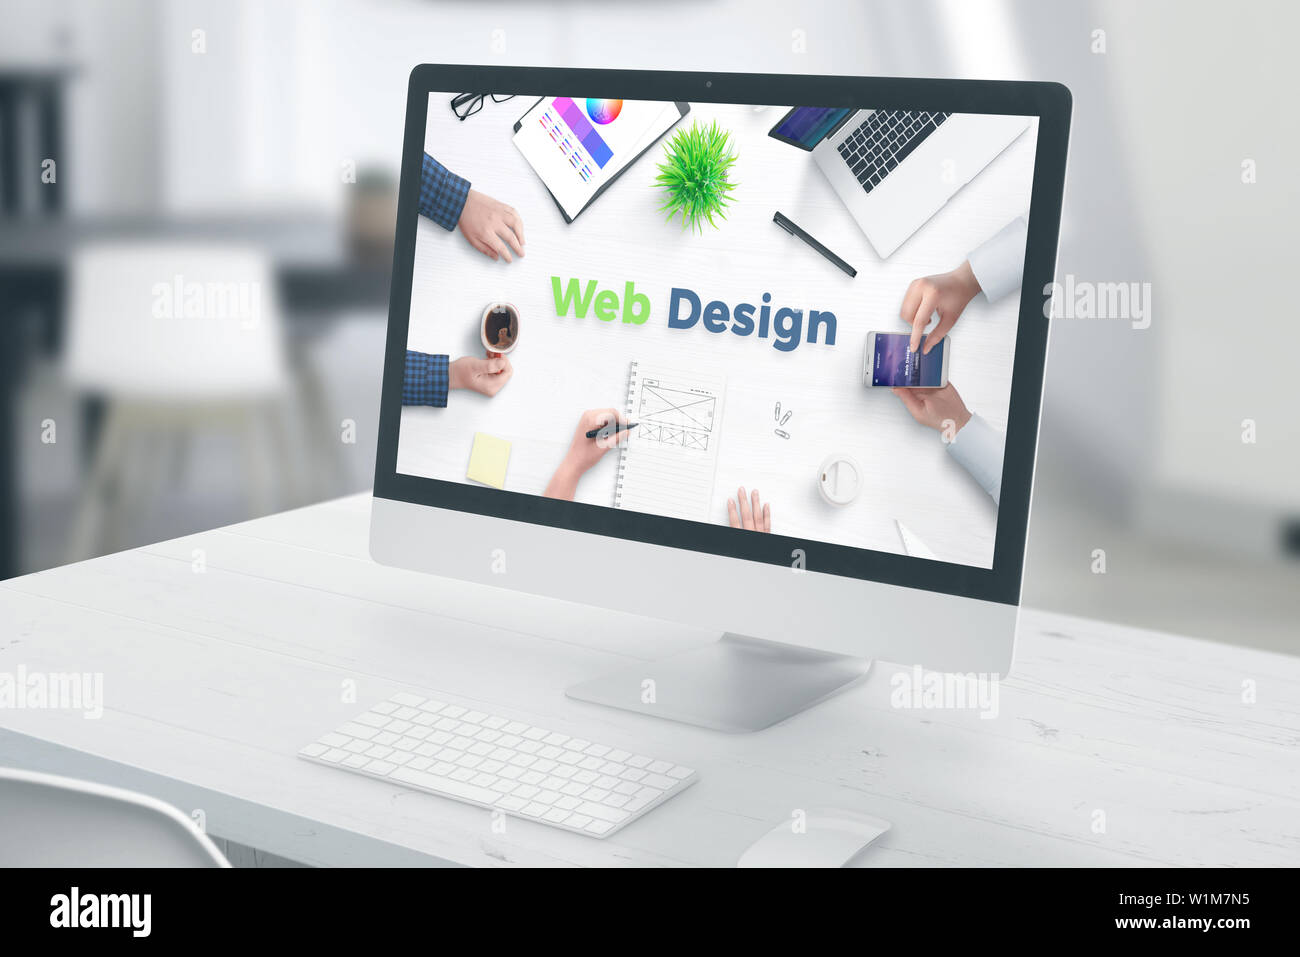 Pantalla de computadora con diseño web texto. concepto de web design studio office. Foto de stock